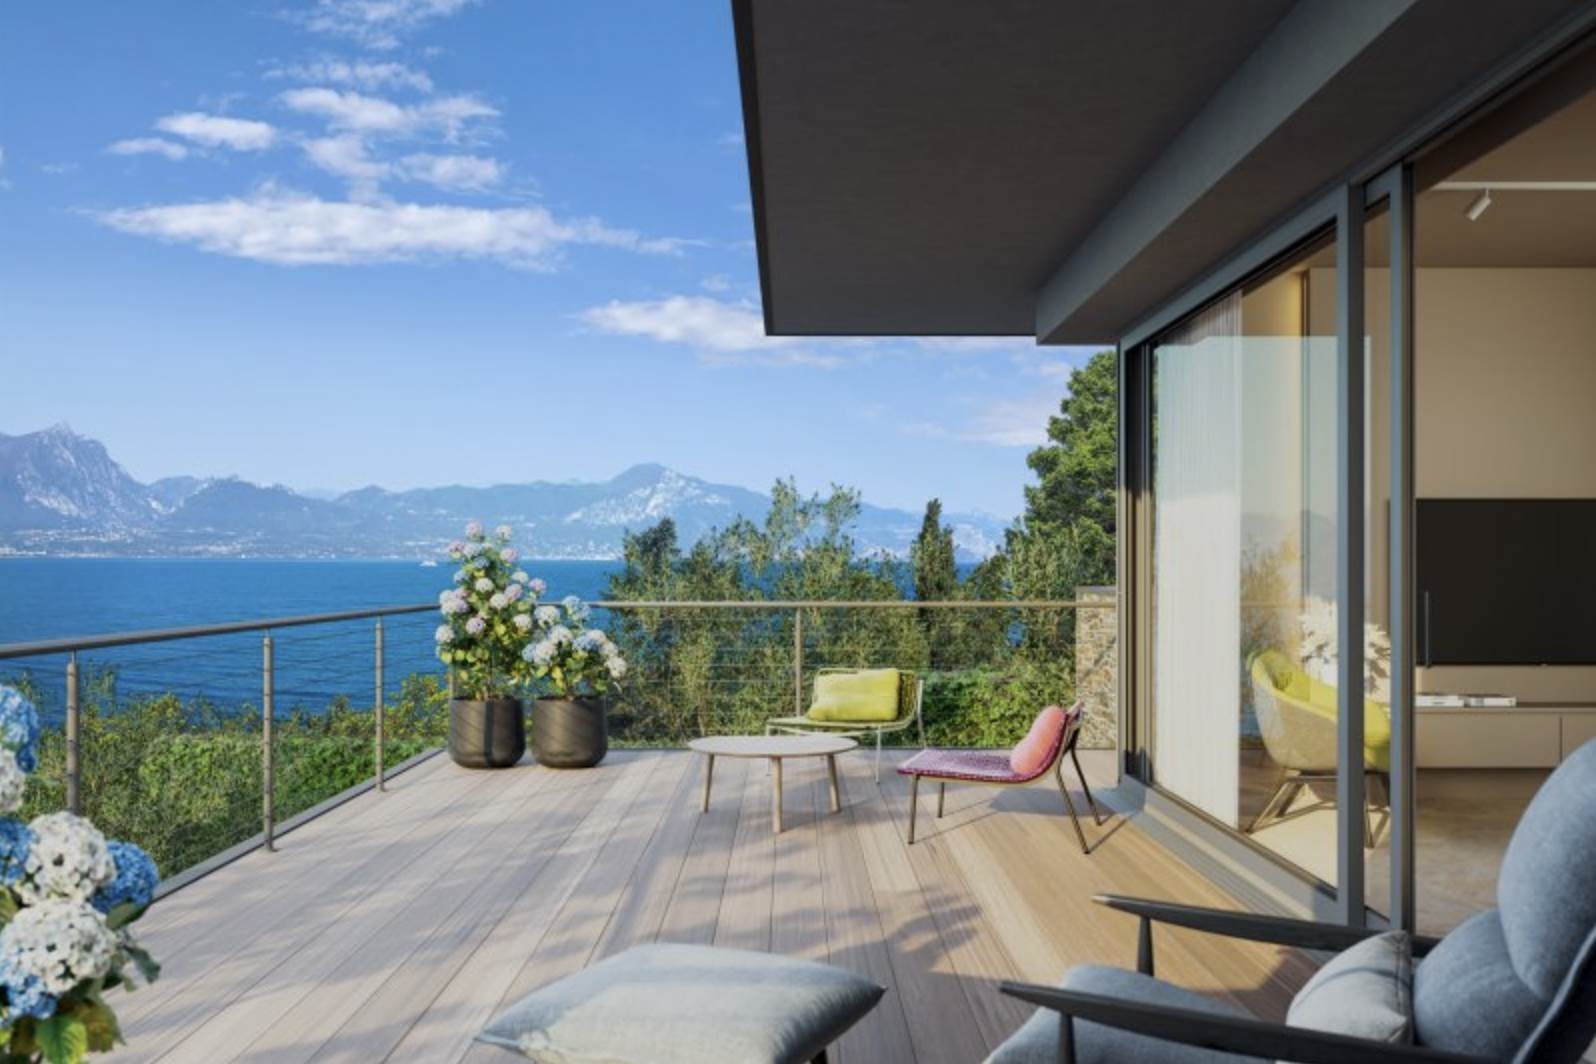 Sulla sposta est del Lago di Garda, in posizione fronte lago tra Torri del Benaco e Garda, viene realizzato un Residence con design moderno e una vista meravigliosa di 180° sul lago. Un complesso 